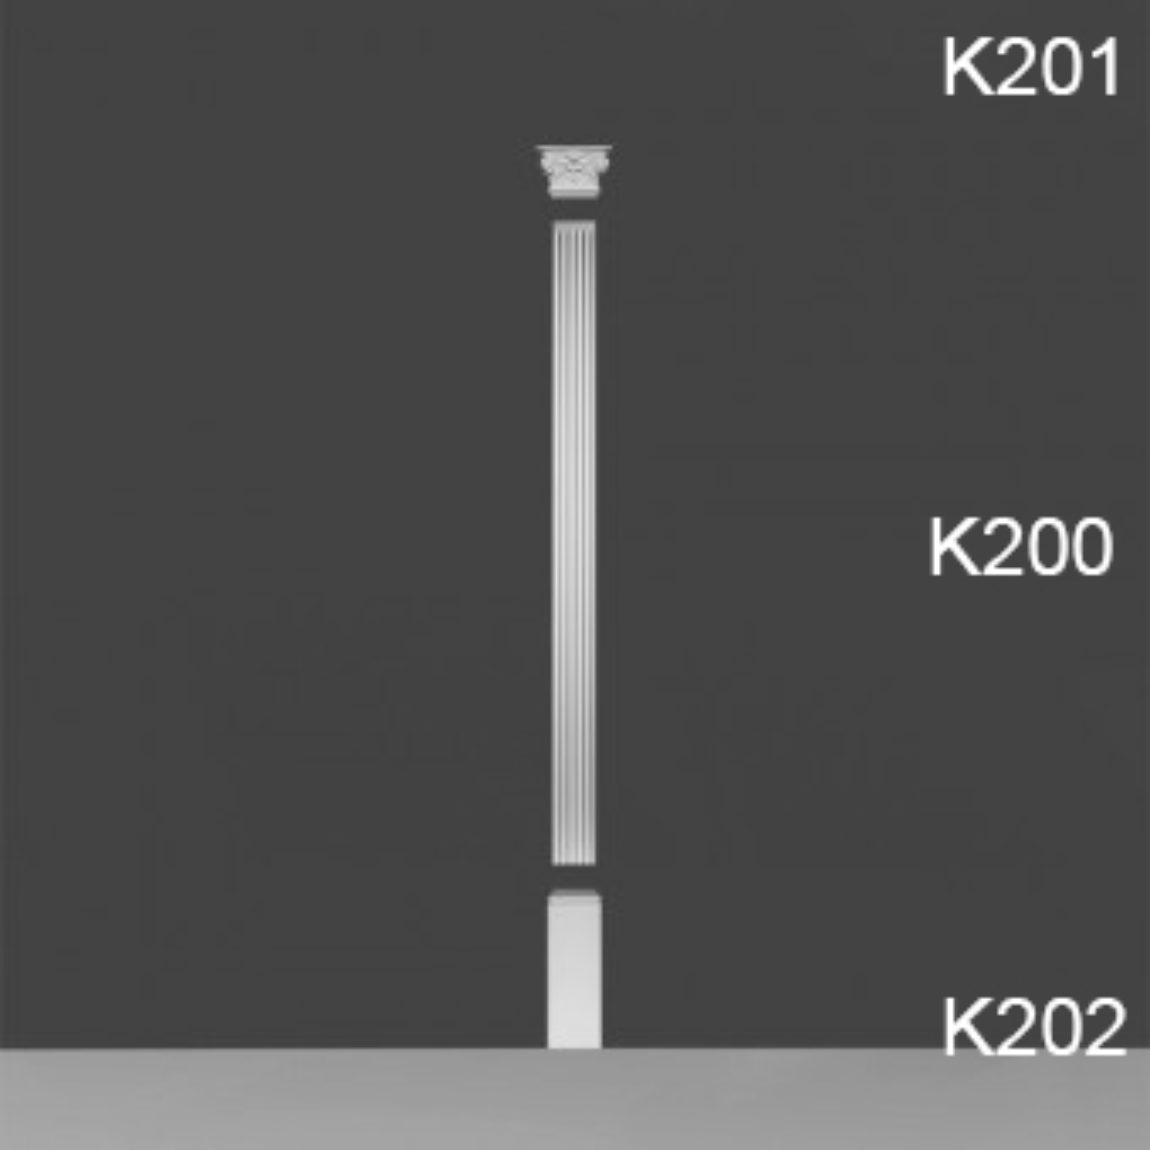 K201 + K200 + K202